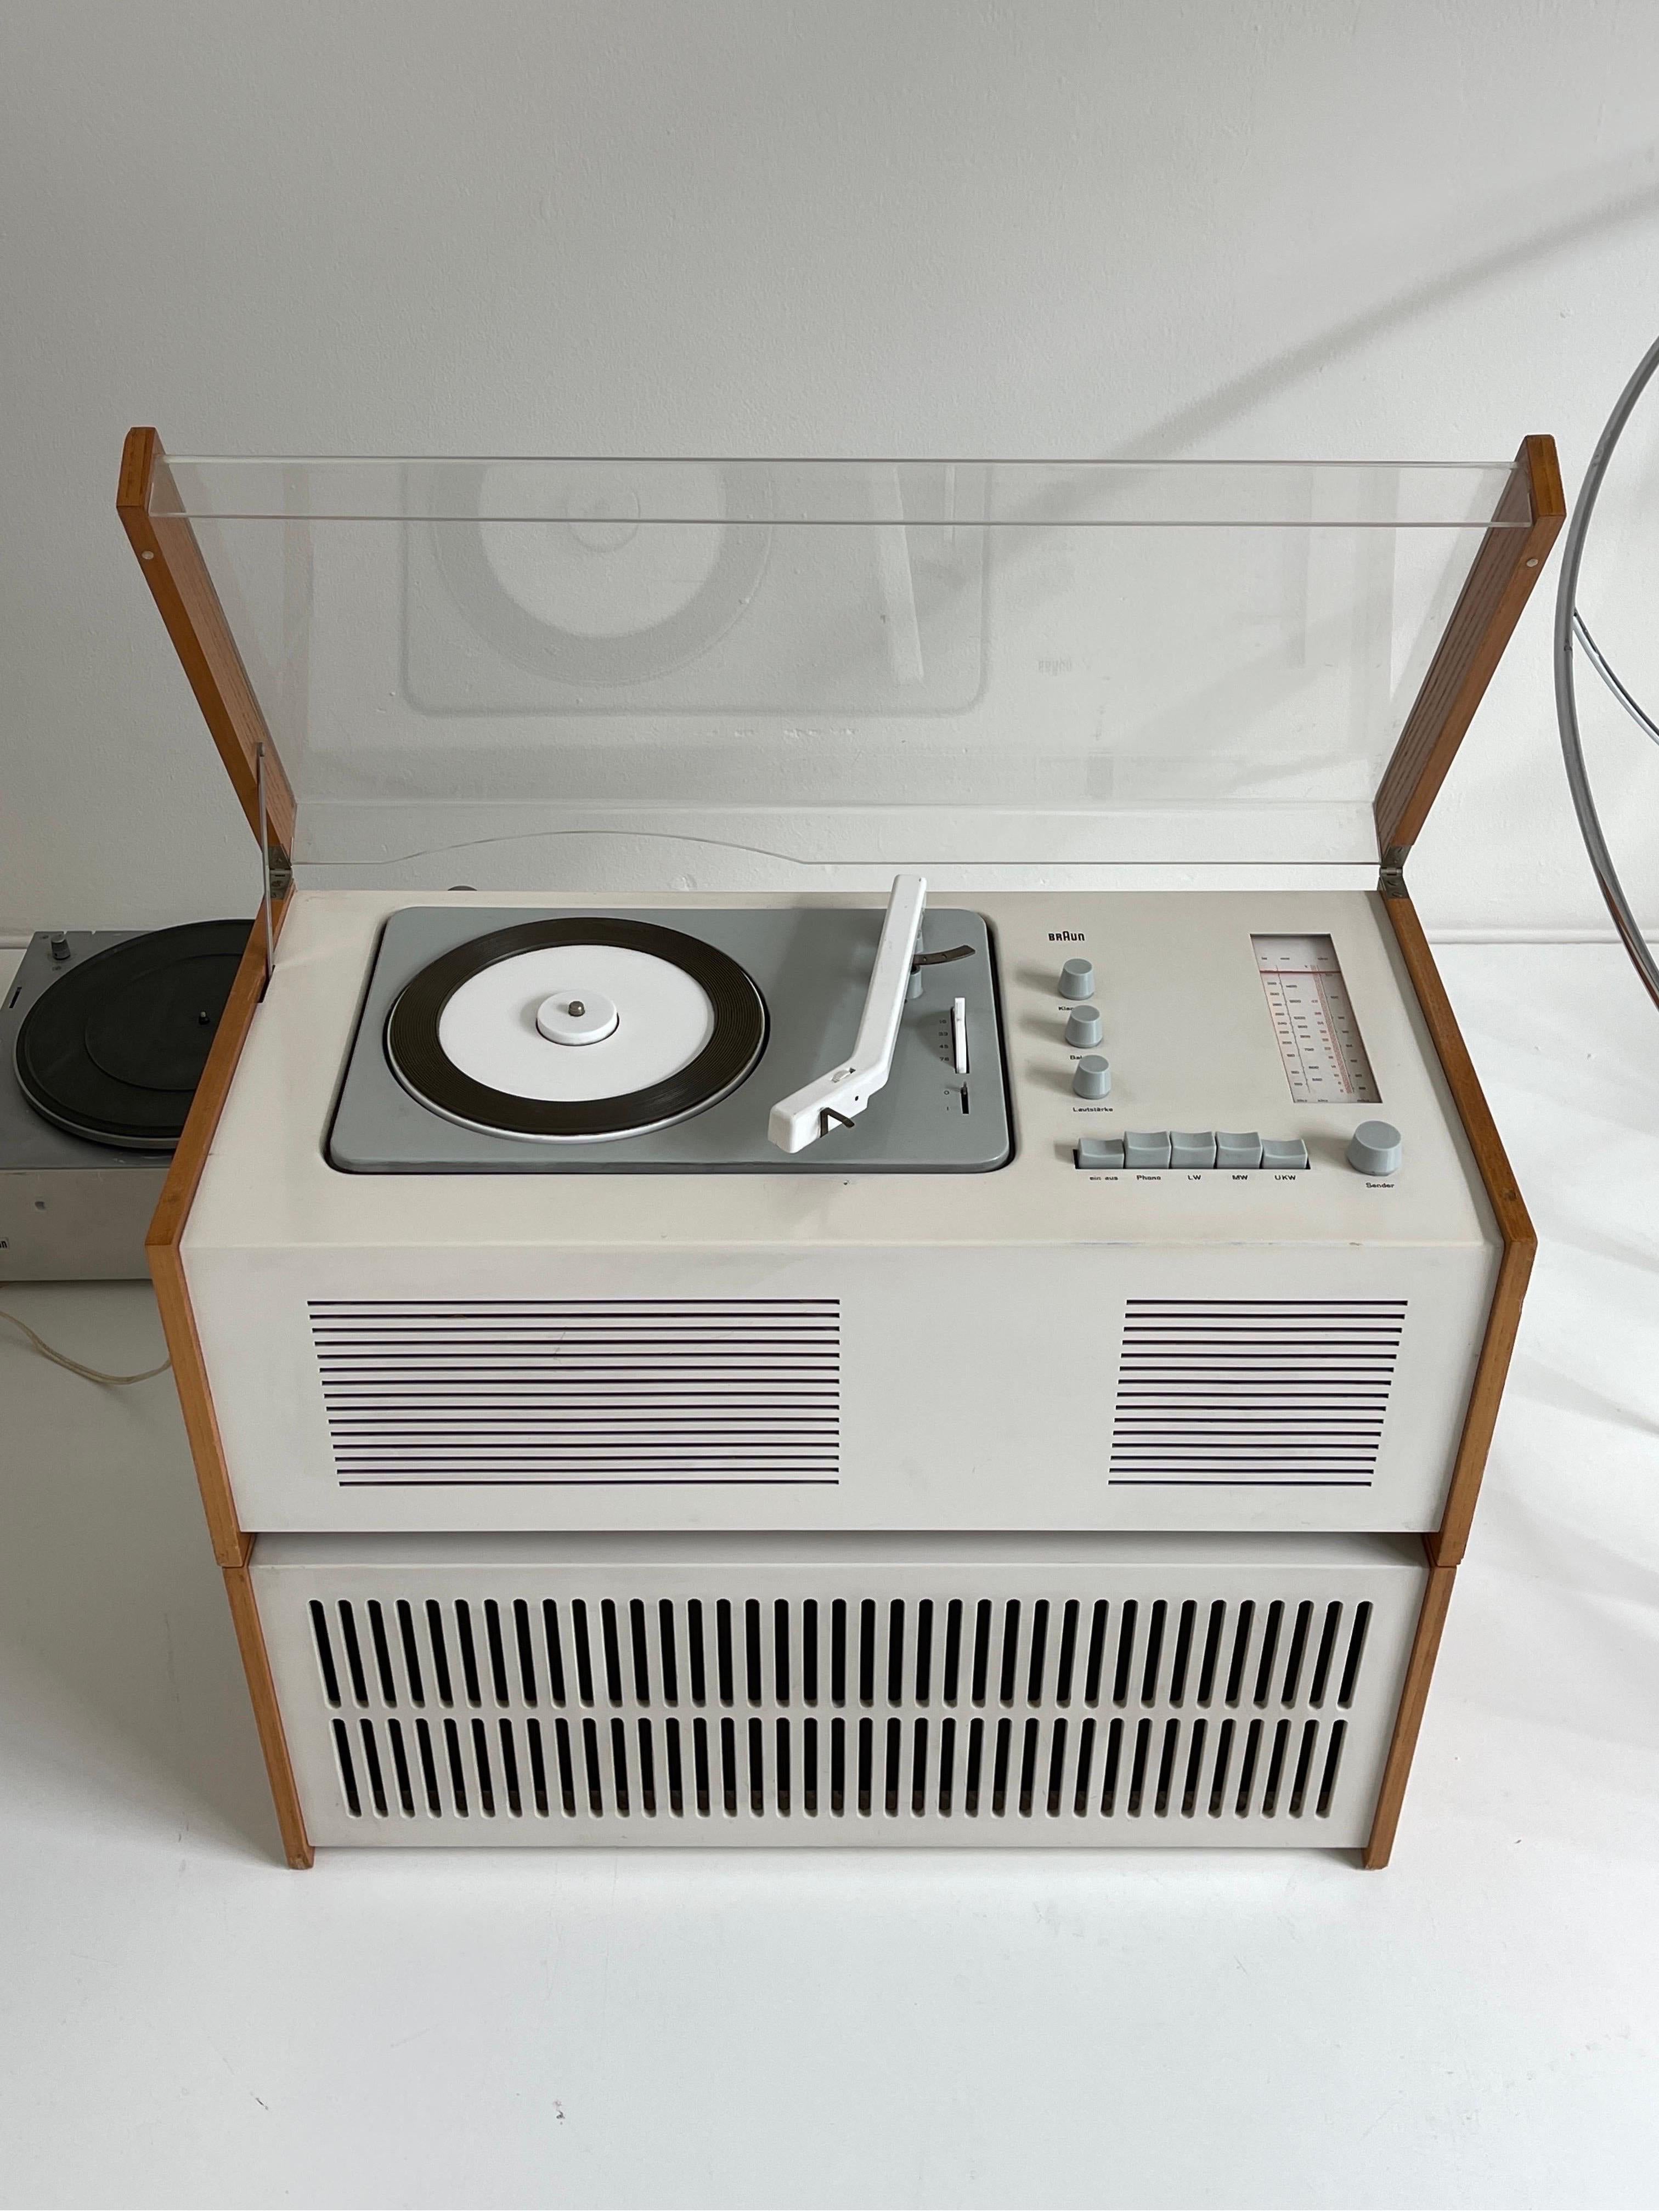 Tourne-disque Braun SK61 conçu par Dieter Rams et Hans Hugelot, 1961. Equipé d'un tourne-disque et d'une radio AM/FM. Haut-parleur Braun L1 des années 1950 inclus. En bon état vintage. Entièrement fonctionnel, il a été révisé par un technicien. 